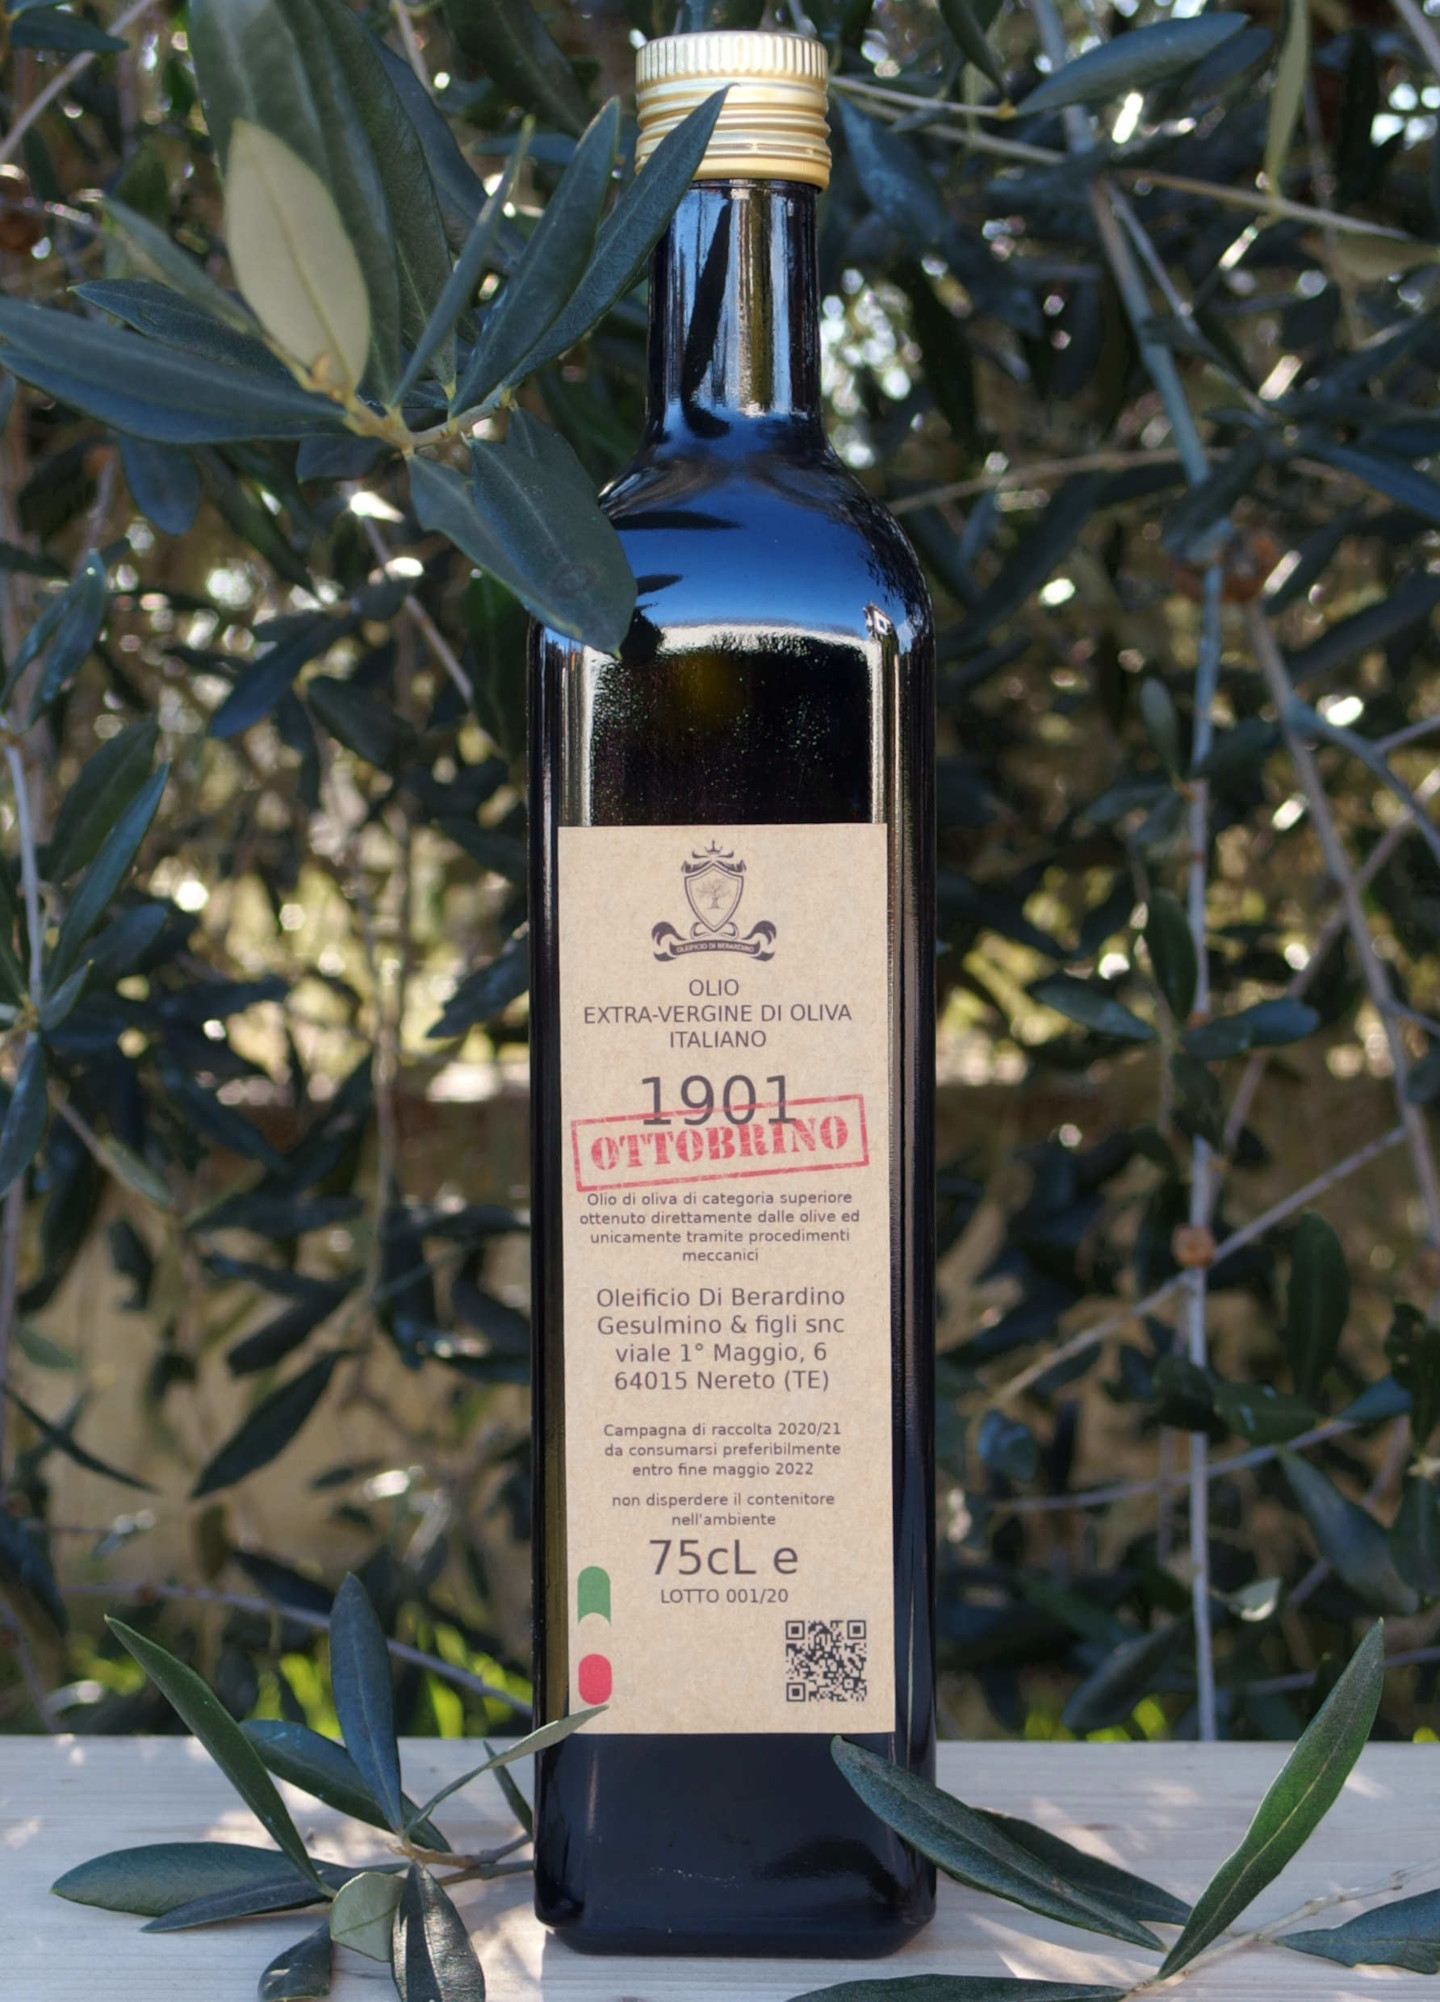 Olio extraverdine di oliva italiano 1901 ottobrino